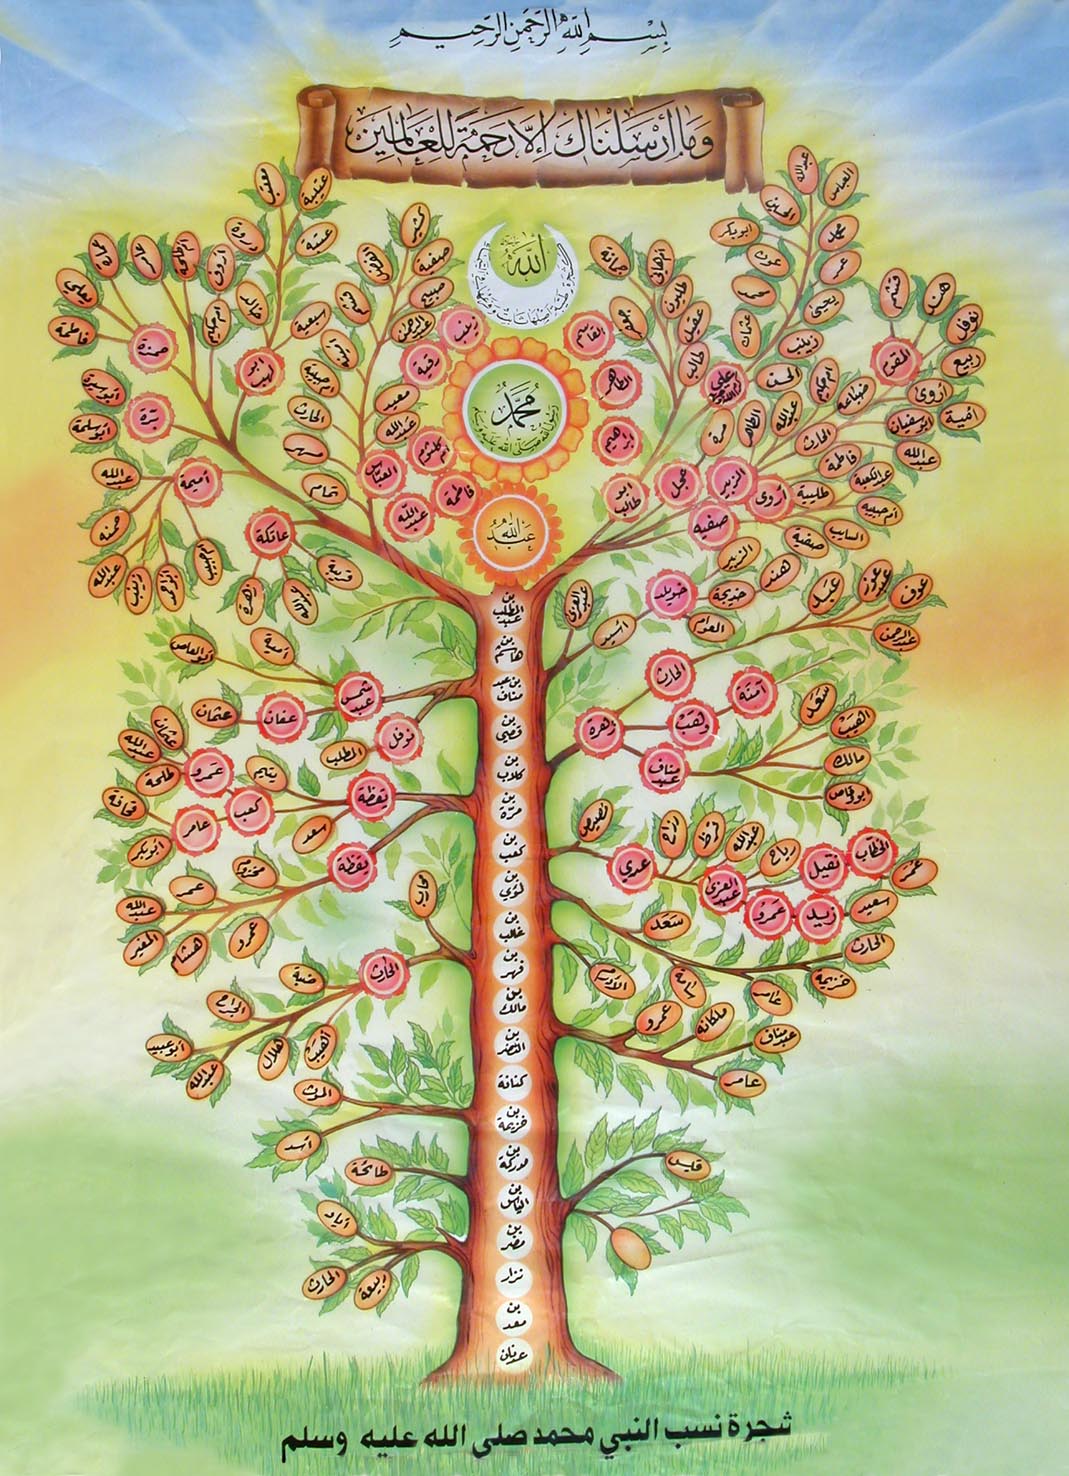 Генеалогическое дерево пророка Мухаммада